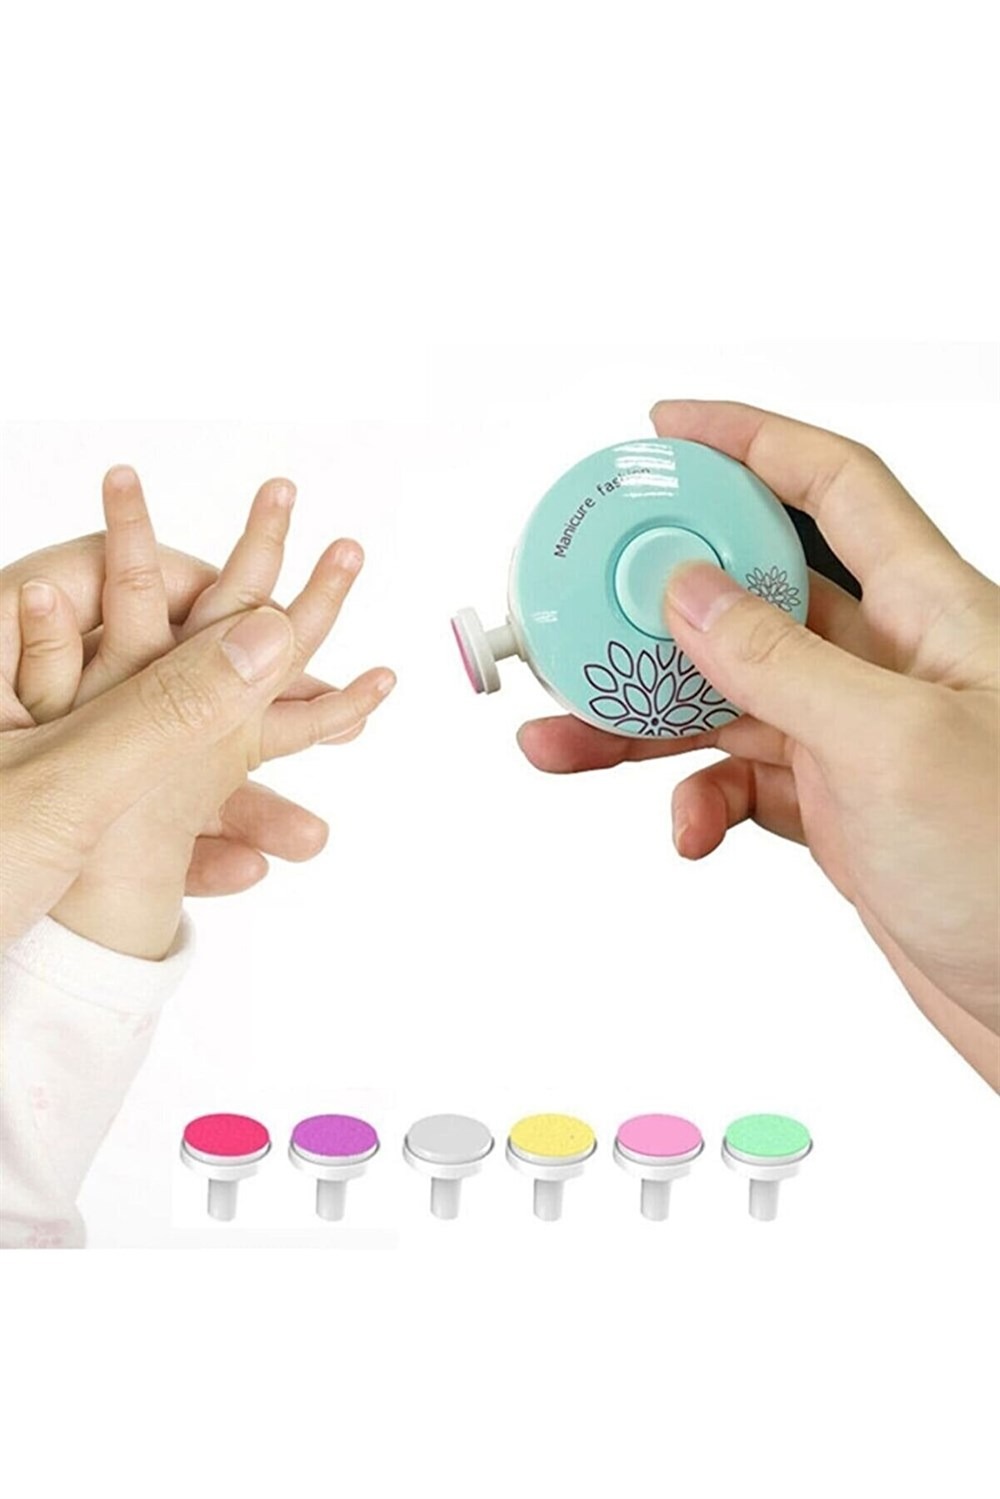 Coupe ongle éléctrique manicure de bébé - Moje - Allobebe Maroc